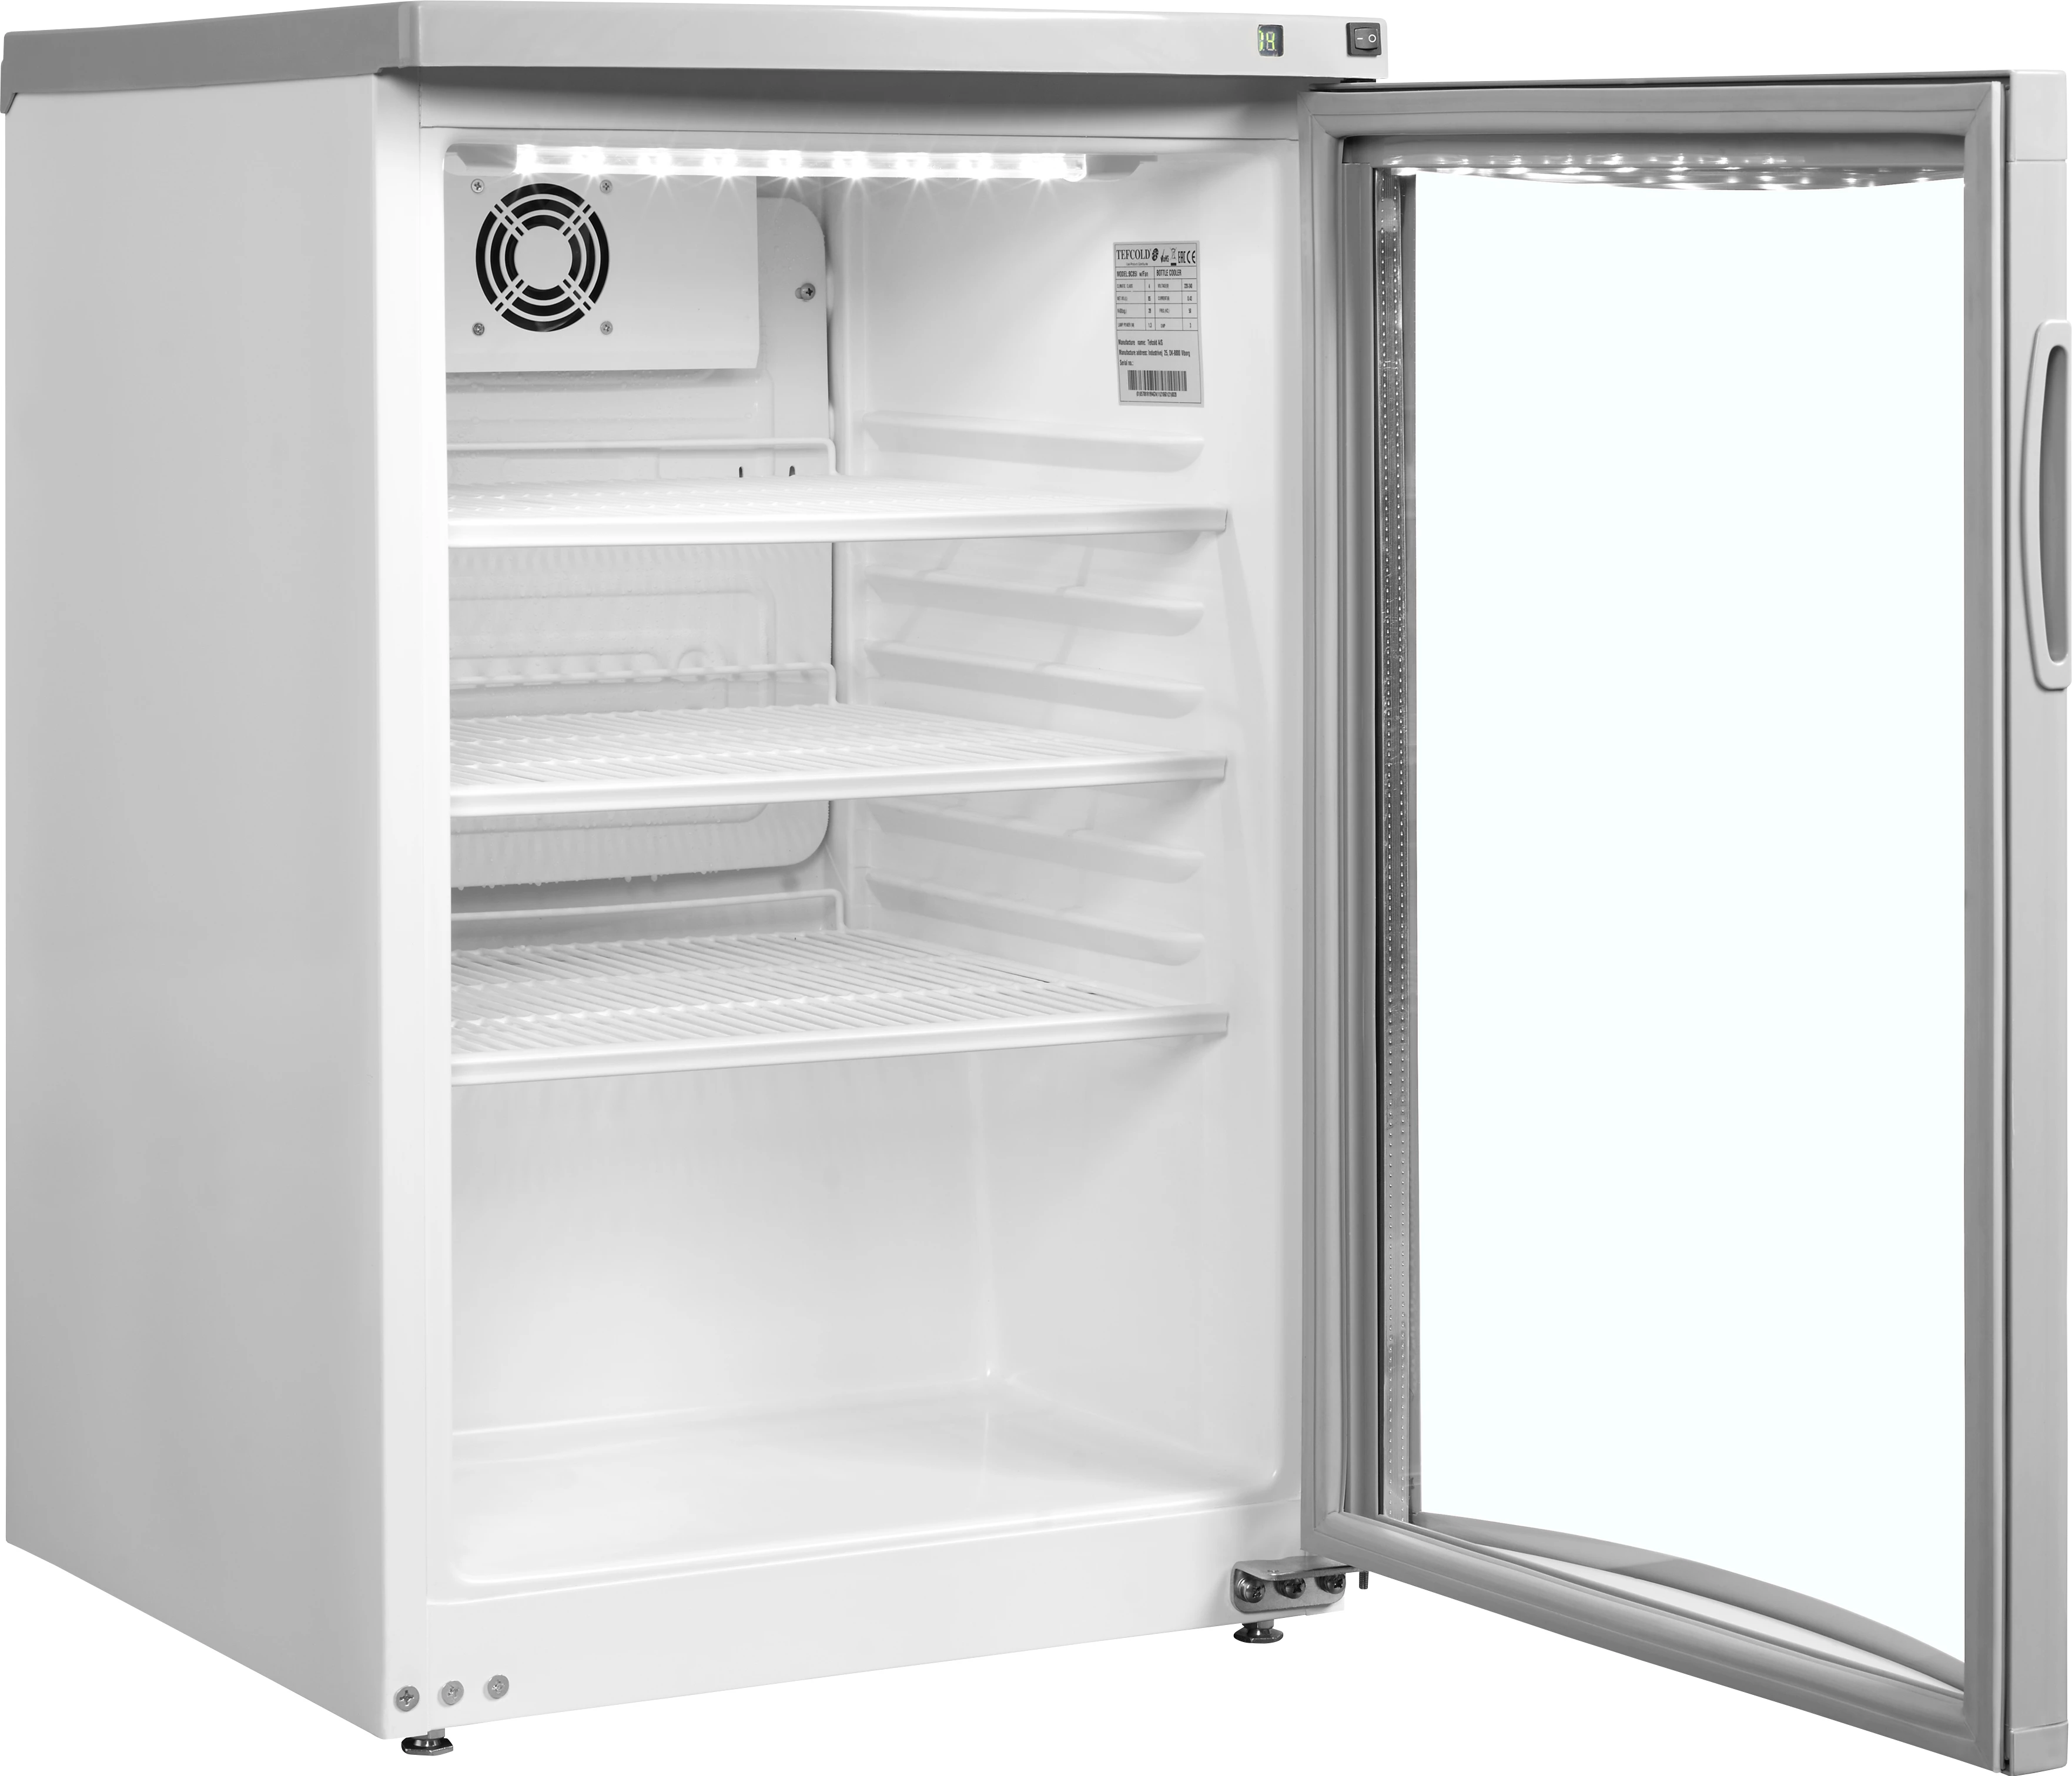 Tefcold BC85 displaykøleskab